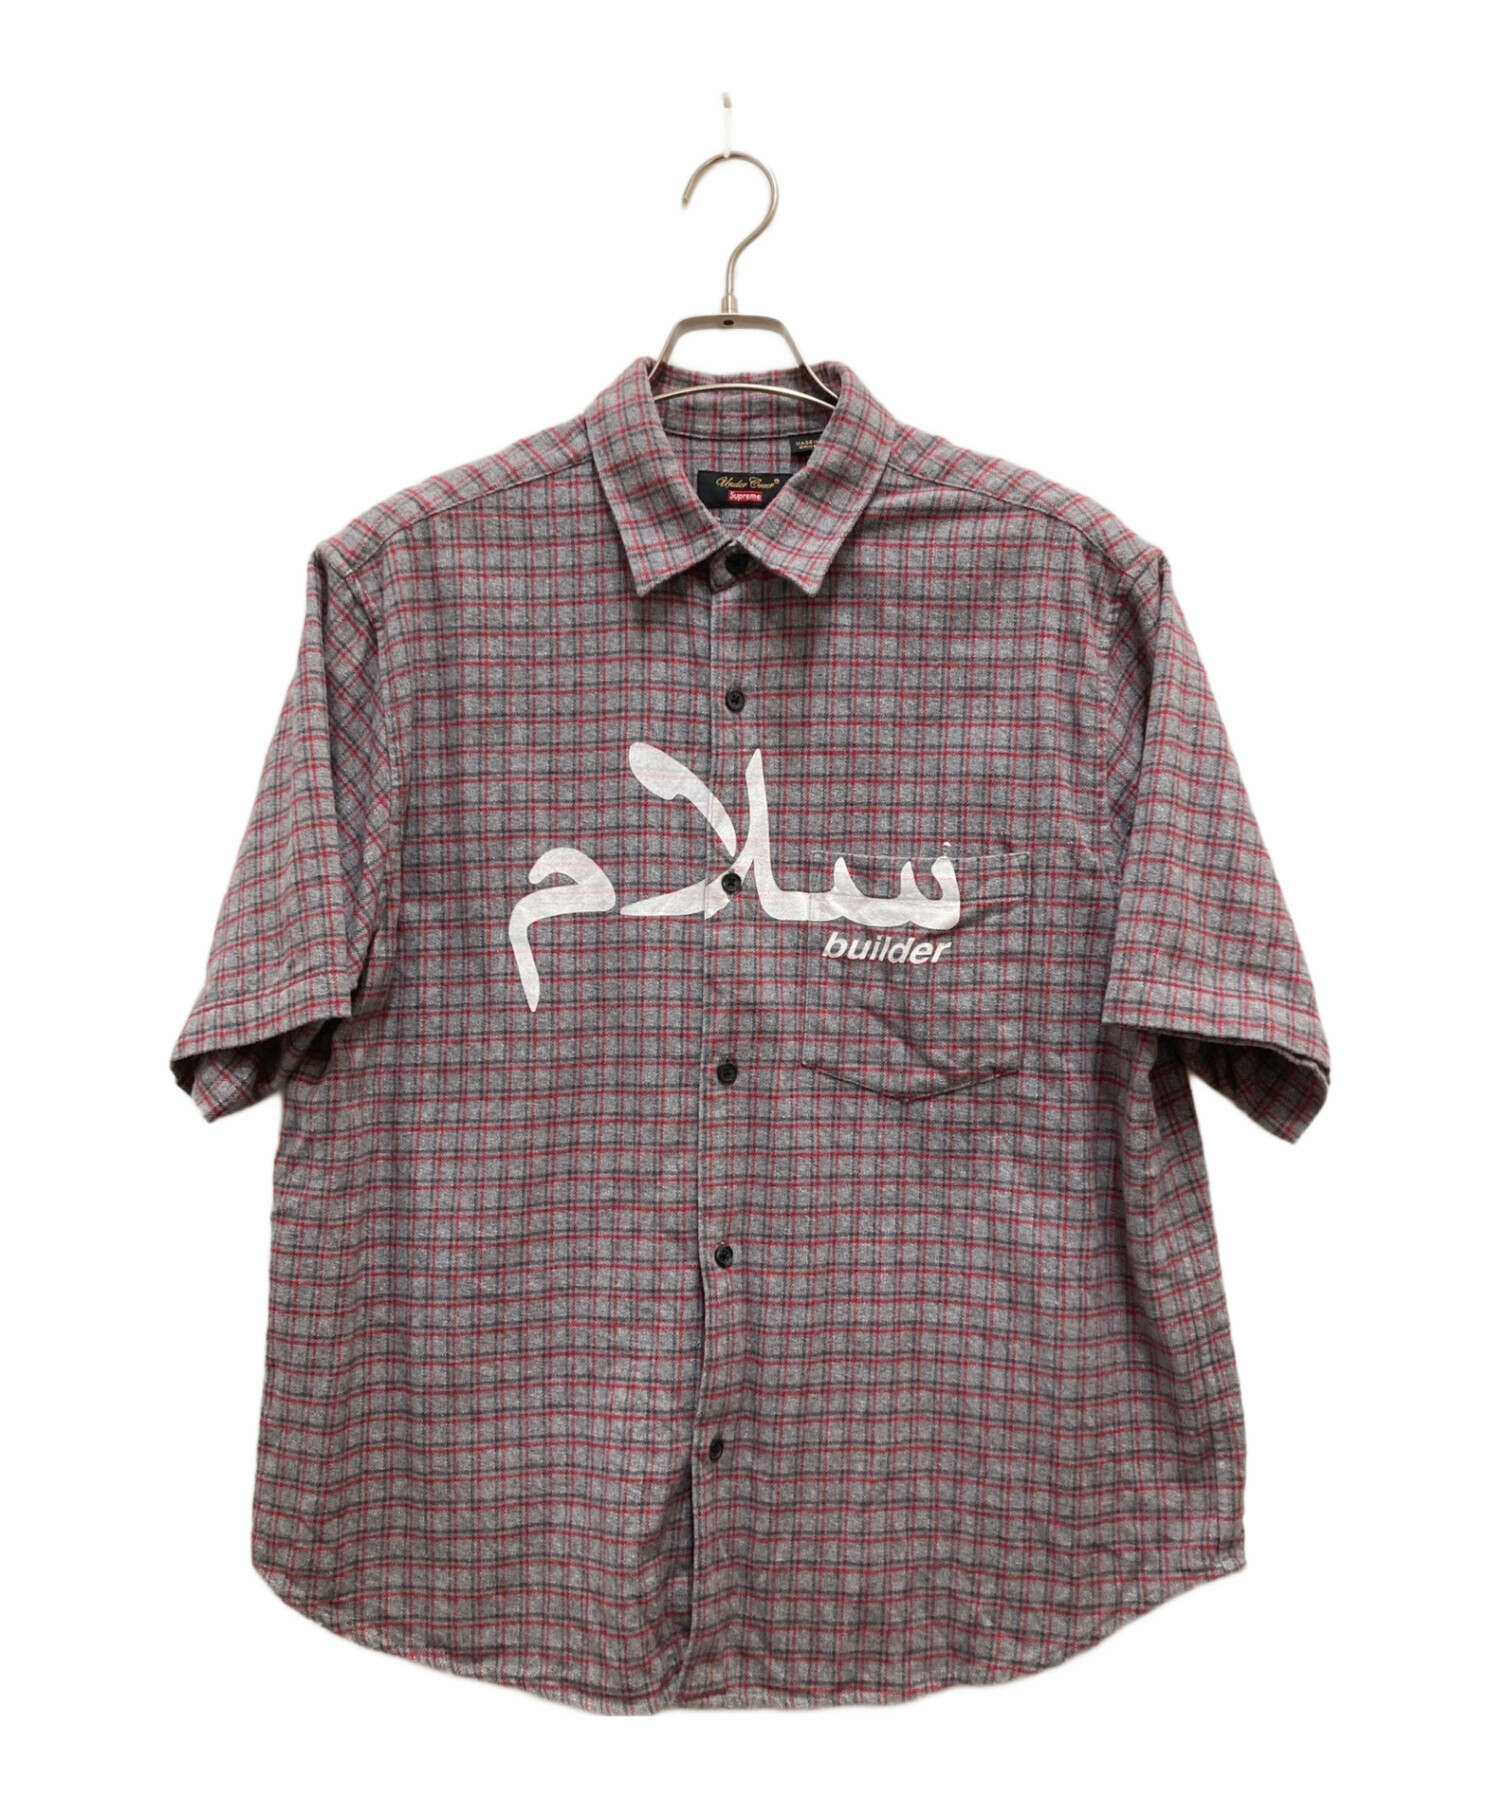 SUPREME (シュプリーム) UNDERCOVER (アンダーカバー) S/S Flannel Shirt/フランネルシャツ グレー サイズ:Ｓ